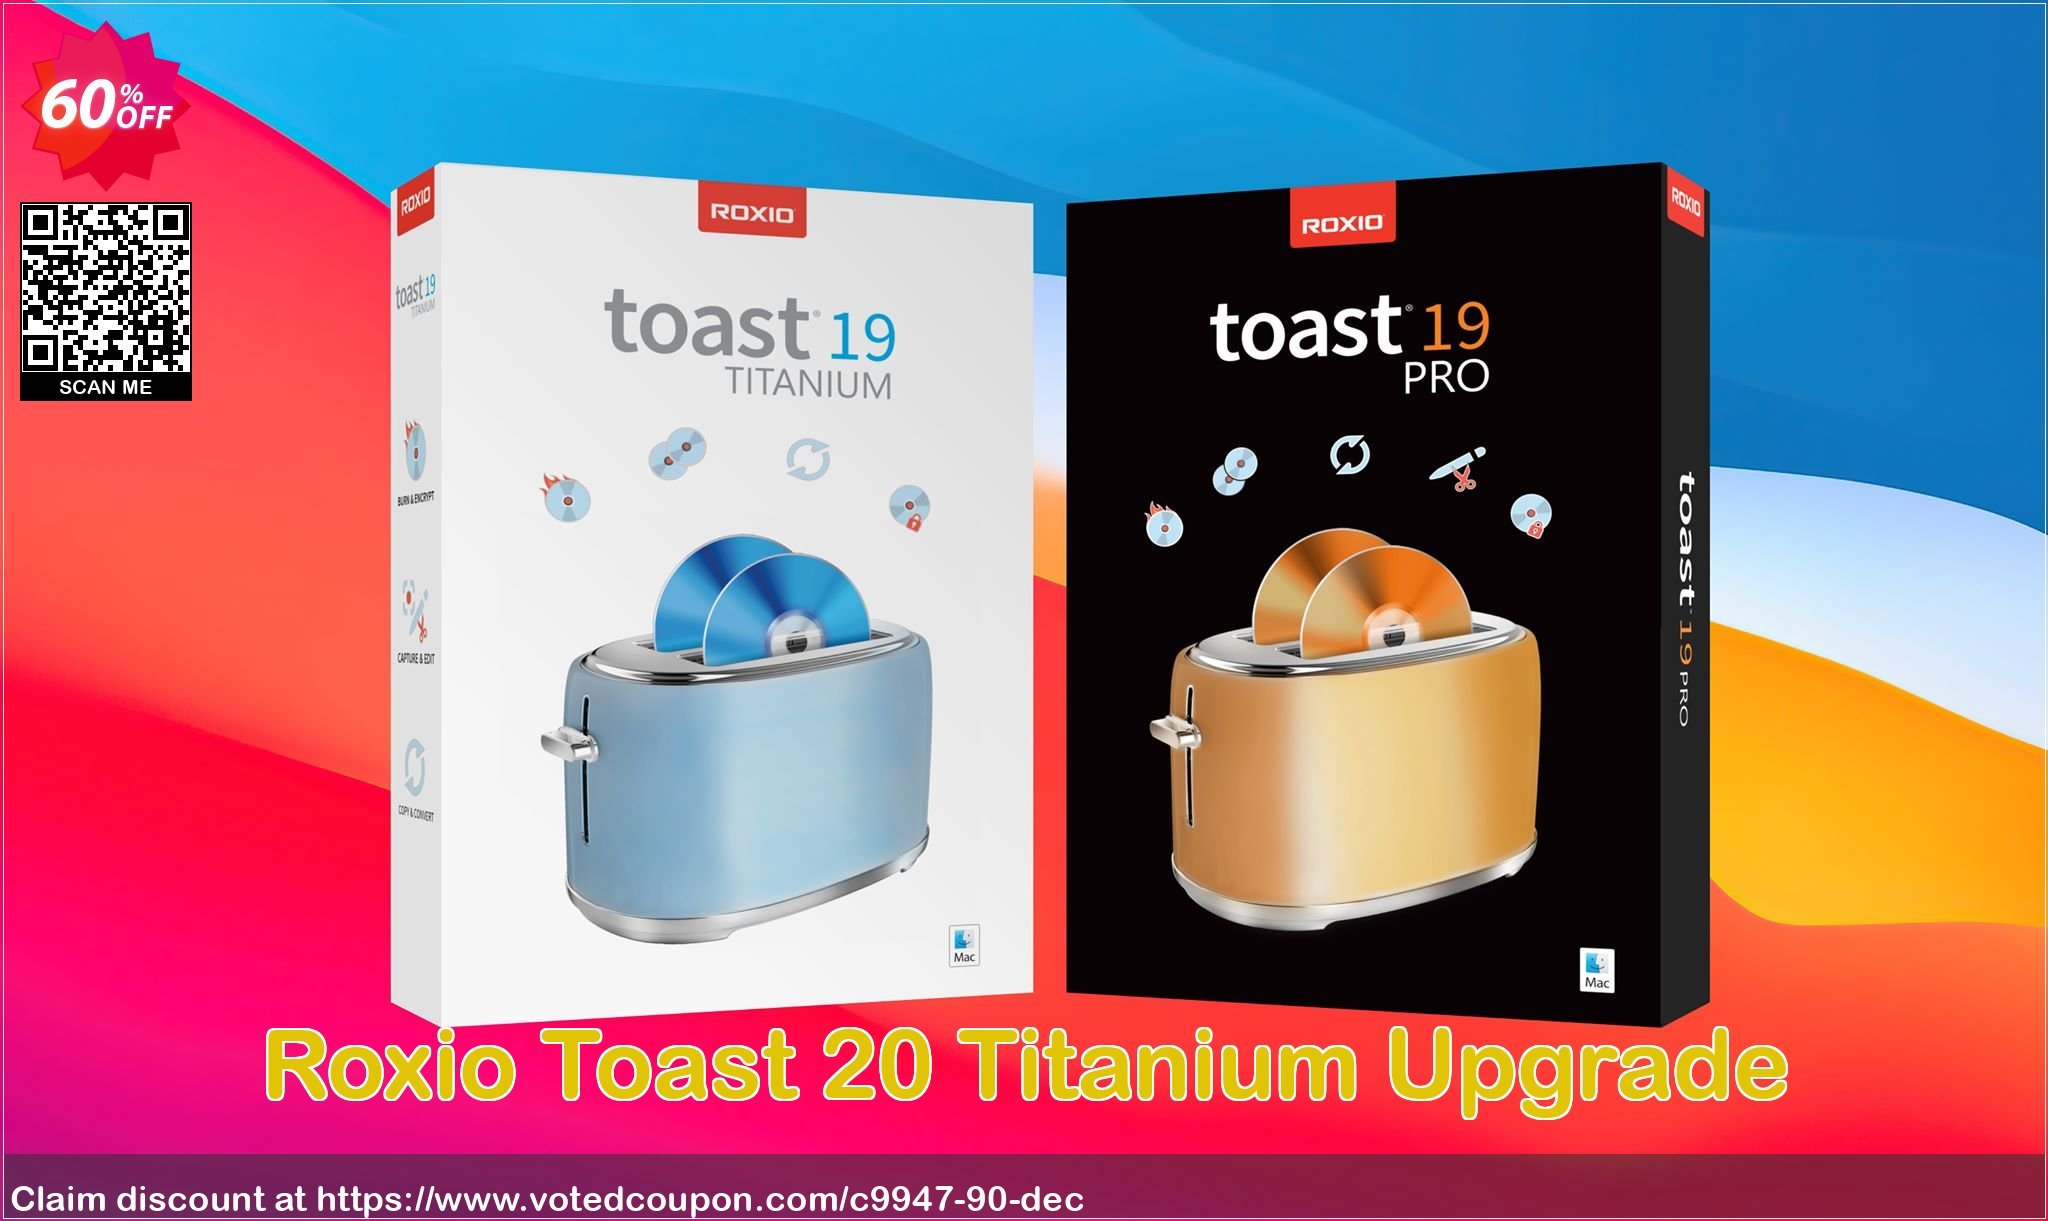 Roxio Toast 20 Titanium Upgrade